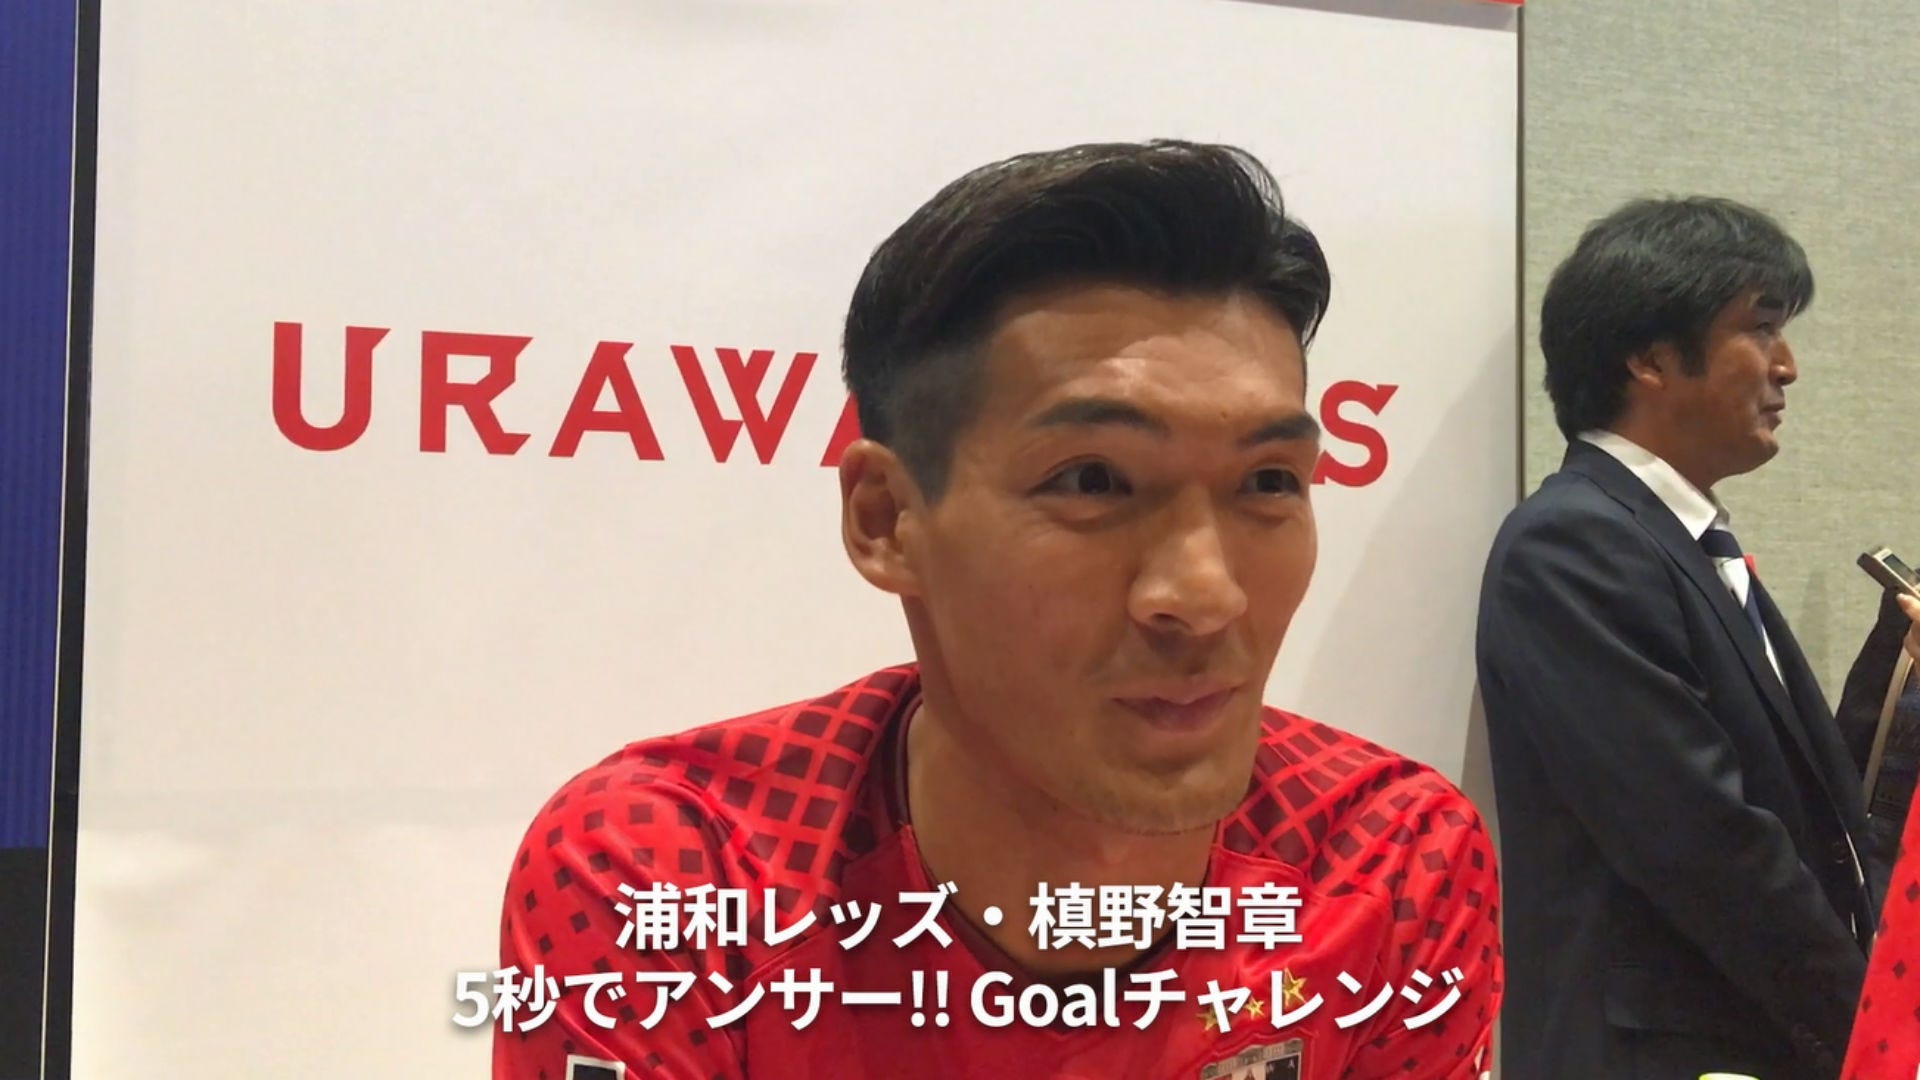 動画 J1注目選手が5秒でq Aにチャレンジ 槙野智章の 好きな芸能人 はもちろん Goal Com 日本